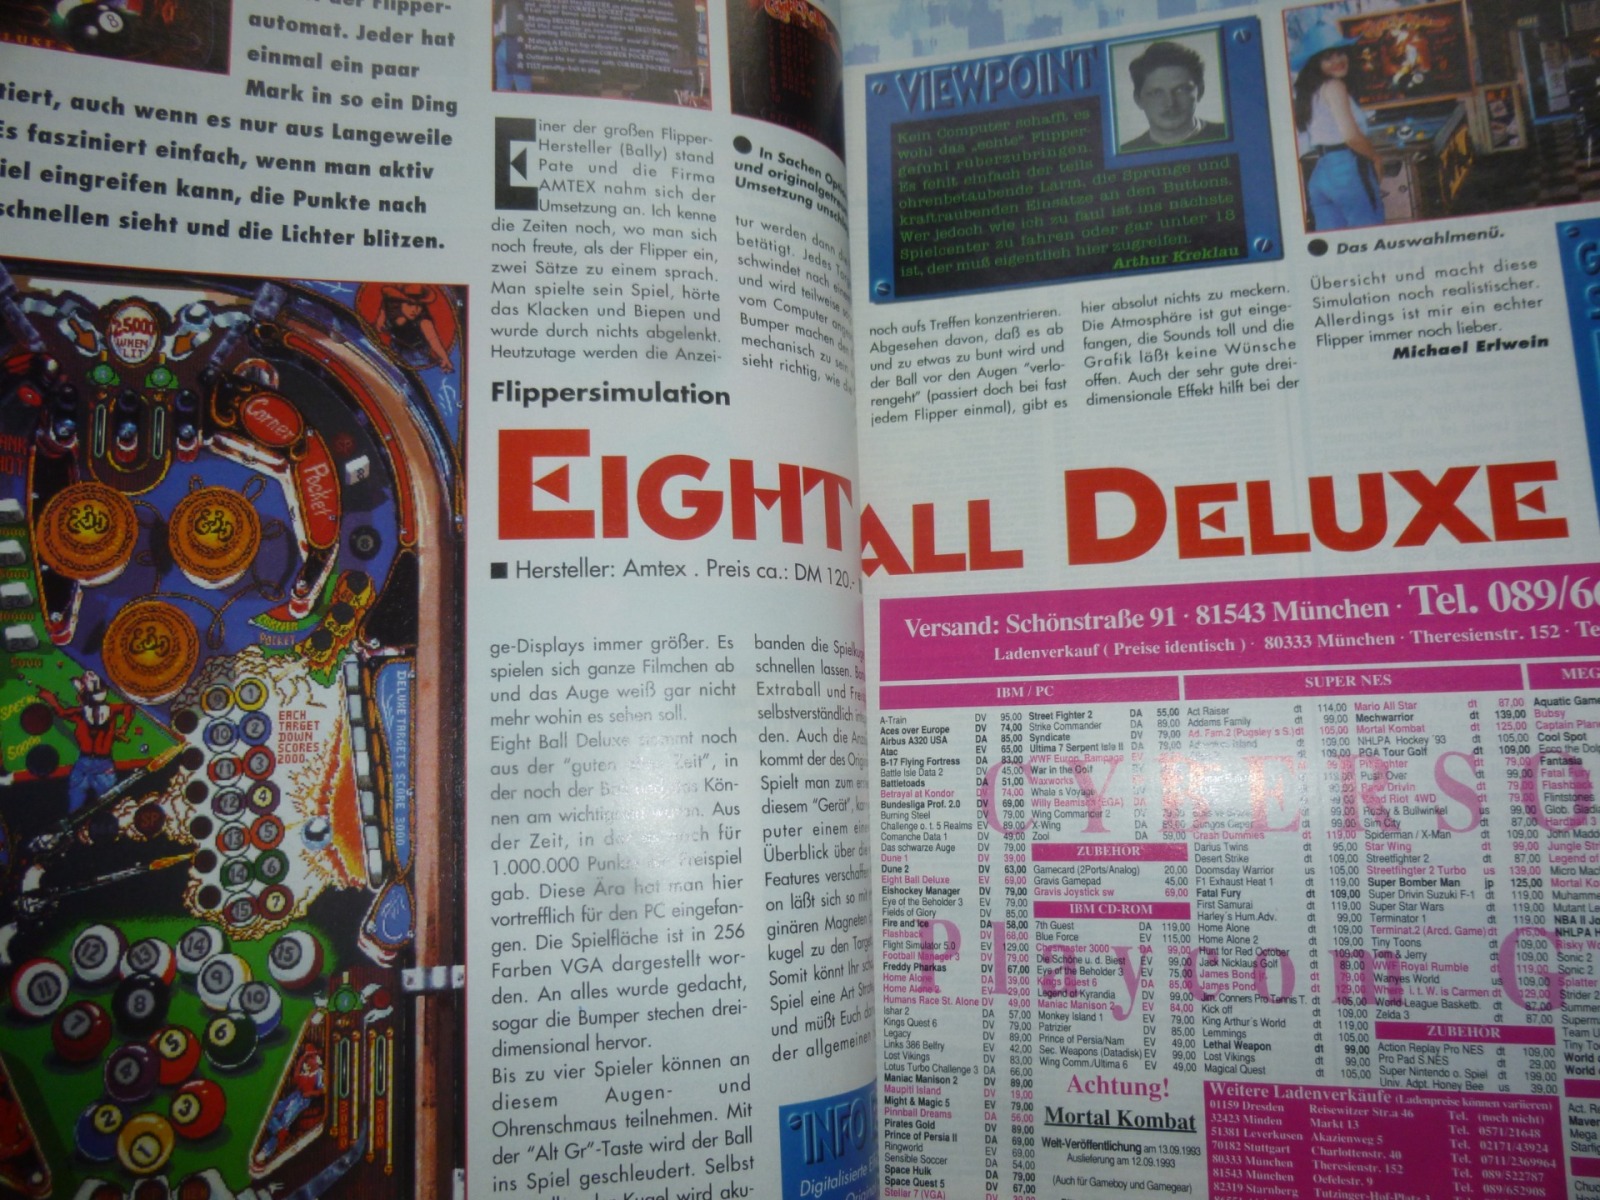 Play Time - Das Computer- und Videospiele-Magazin - Ausgabe 10/93 1993 13